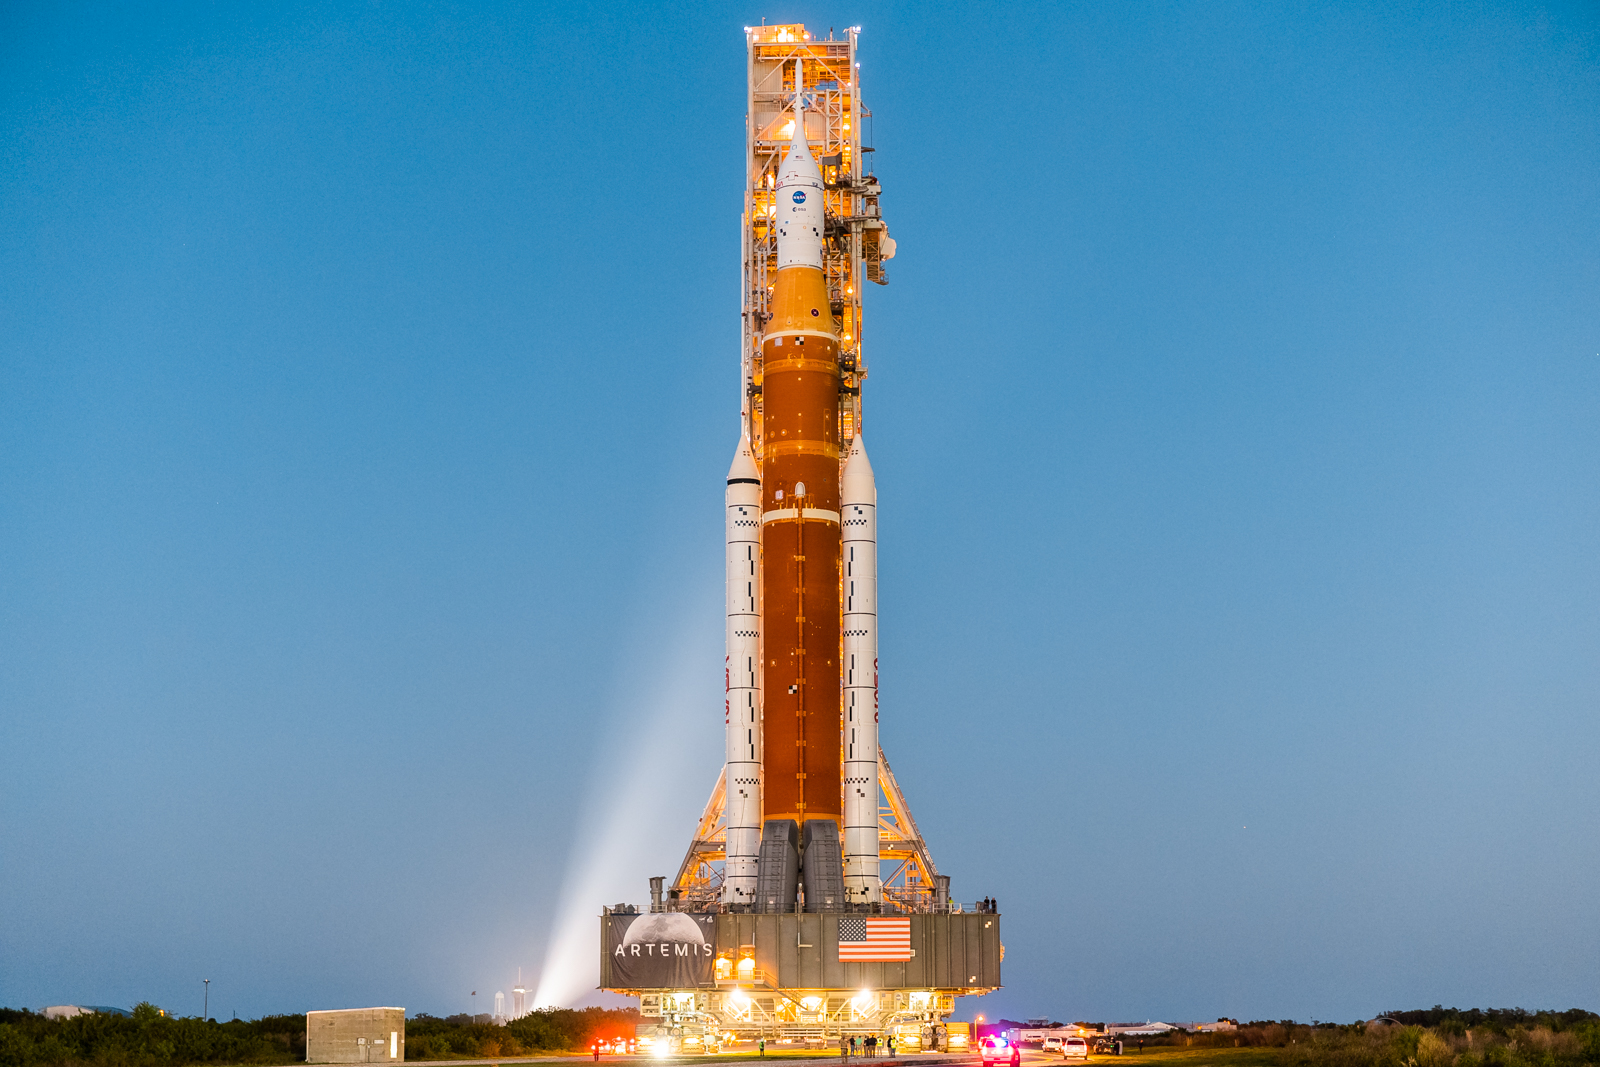 Ракета NASA SLS і космічний корабель Orion отримають нове обладнання для пілотованої місії Artemis II